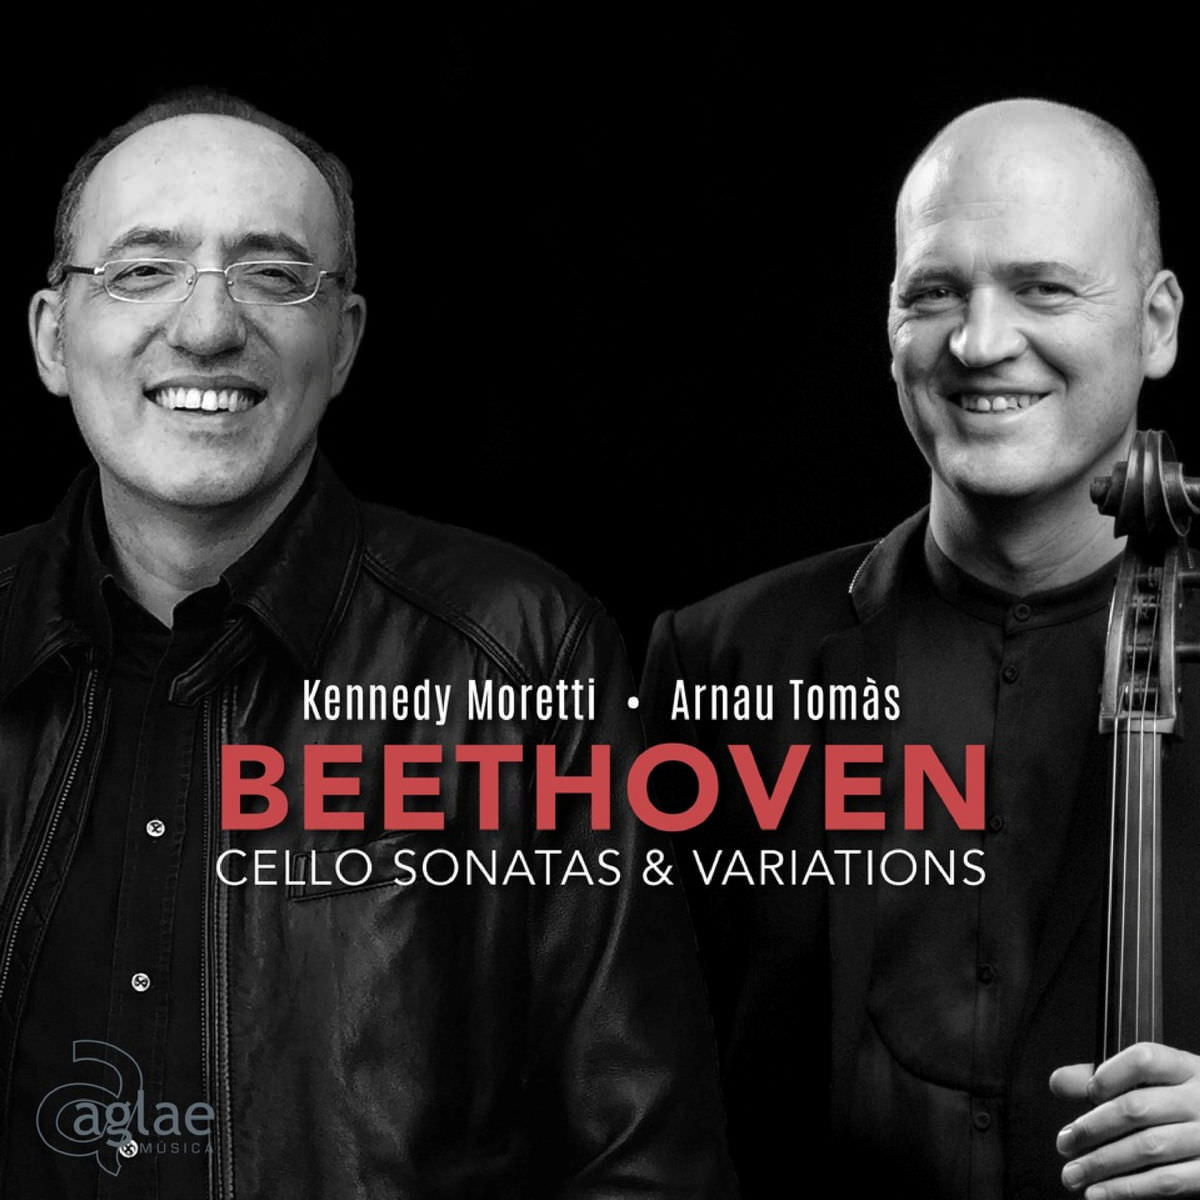 Arnau Tomas & Kennedy Moretti - Beethoven: Cello Sonatas & Variations (2018) [FLAC 24bit/96kHz]